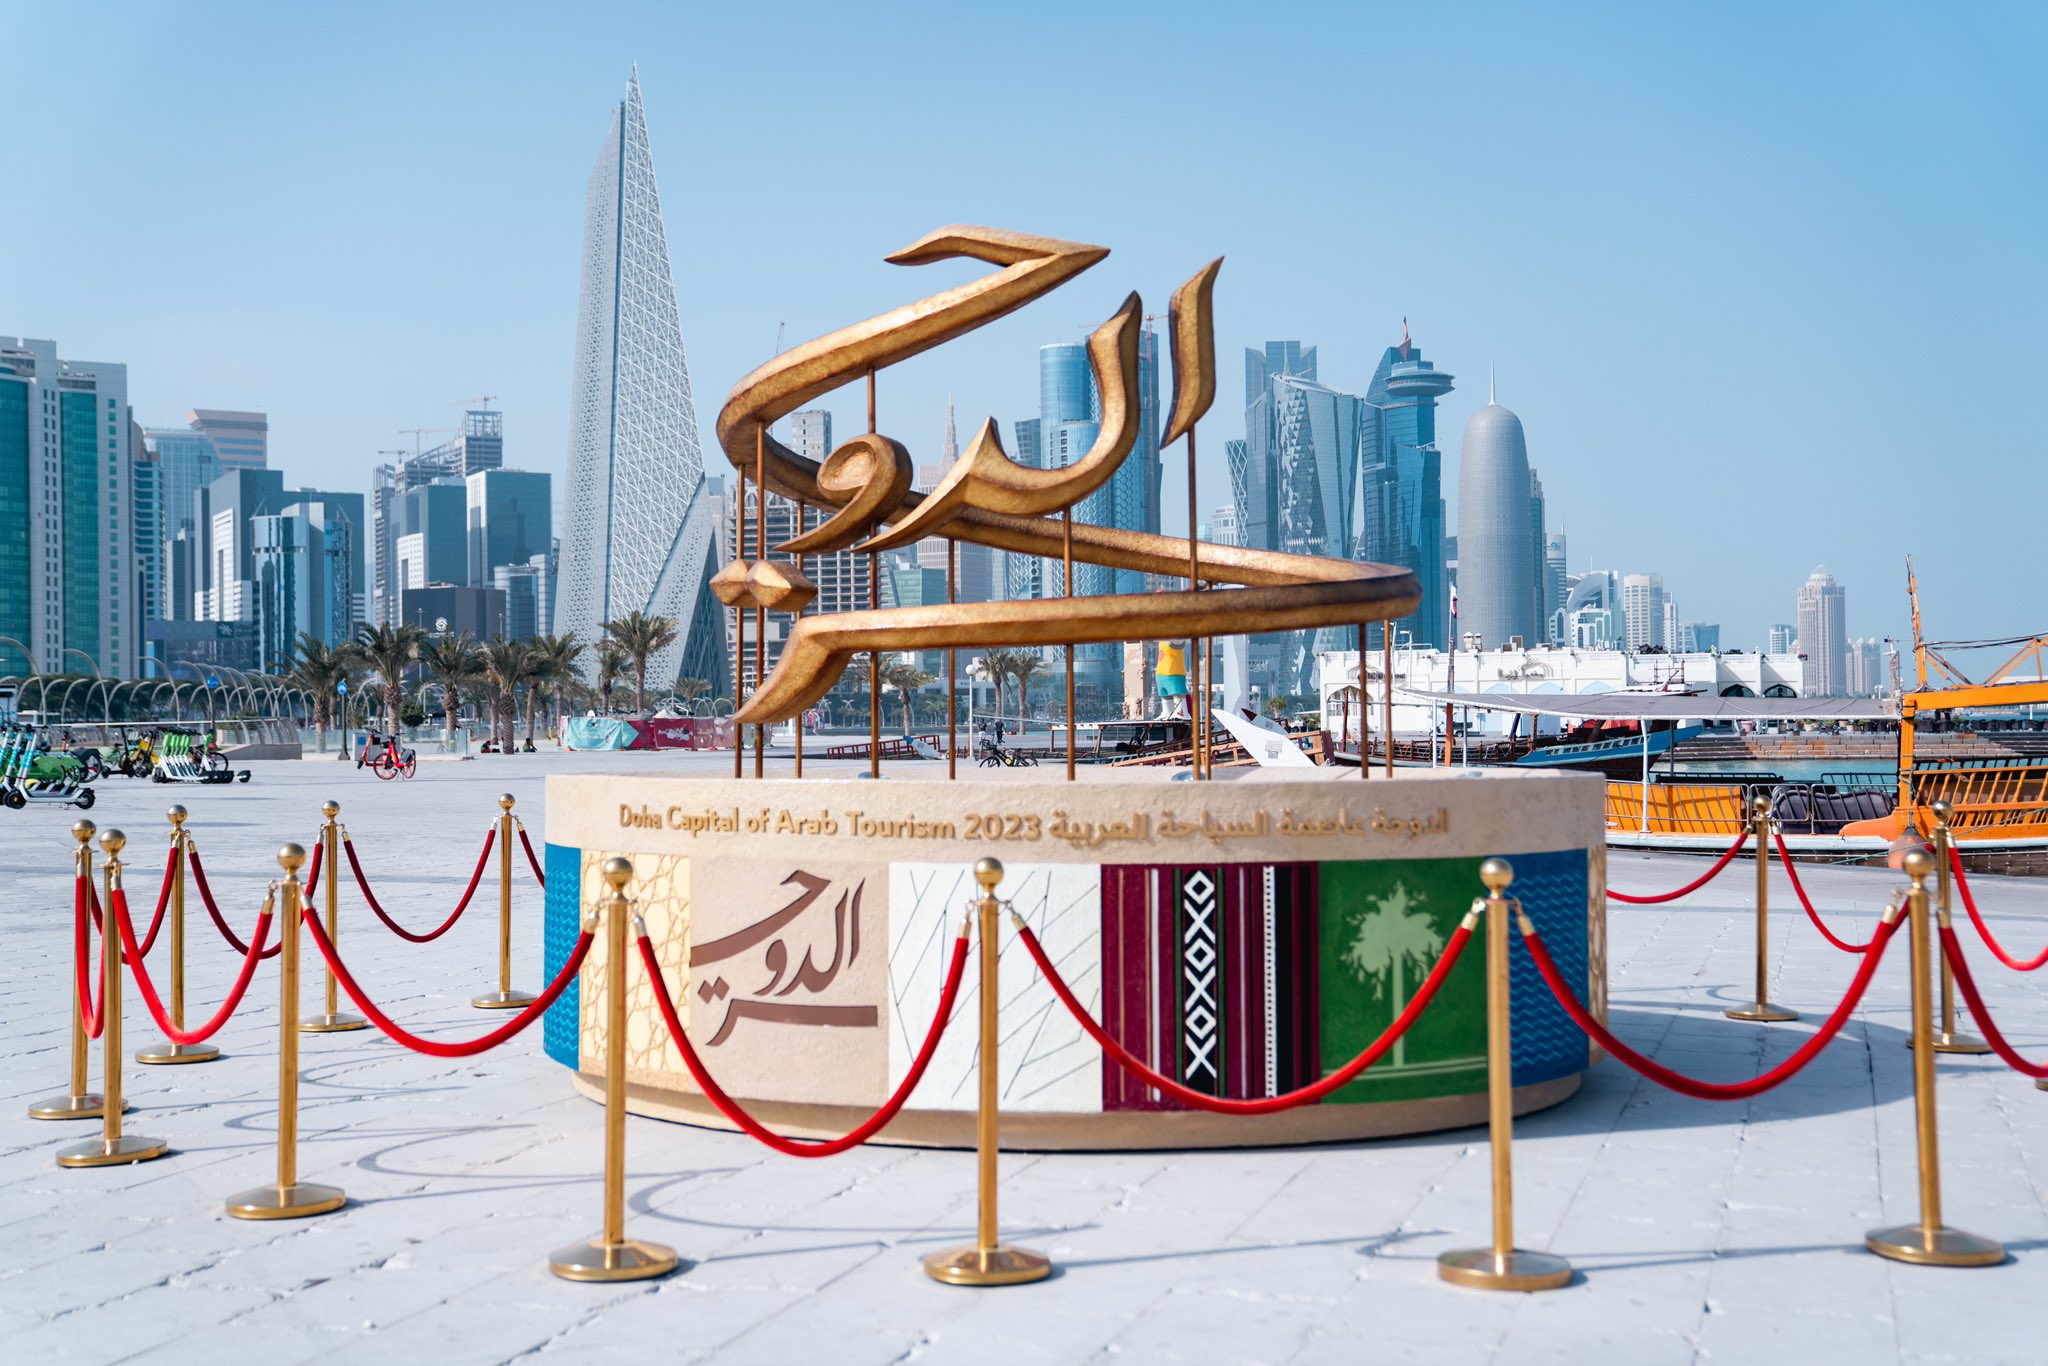 تعافت صناعة السياحة العربية بالكامل بعد خسارة المليارات خلال Covid-19 أخبار الدوحة